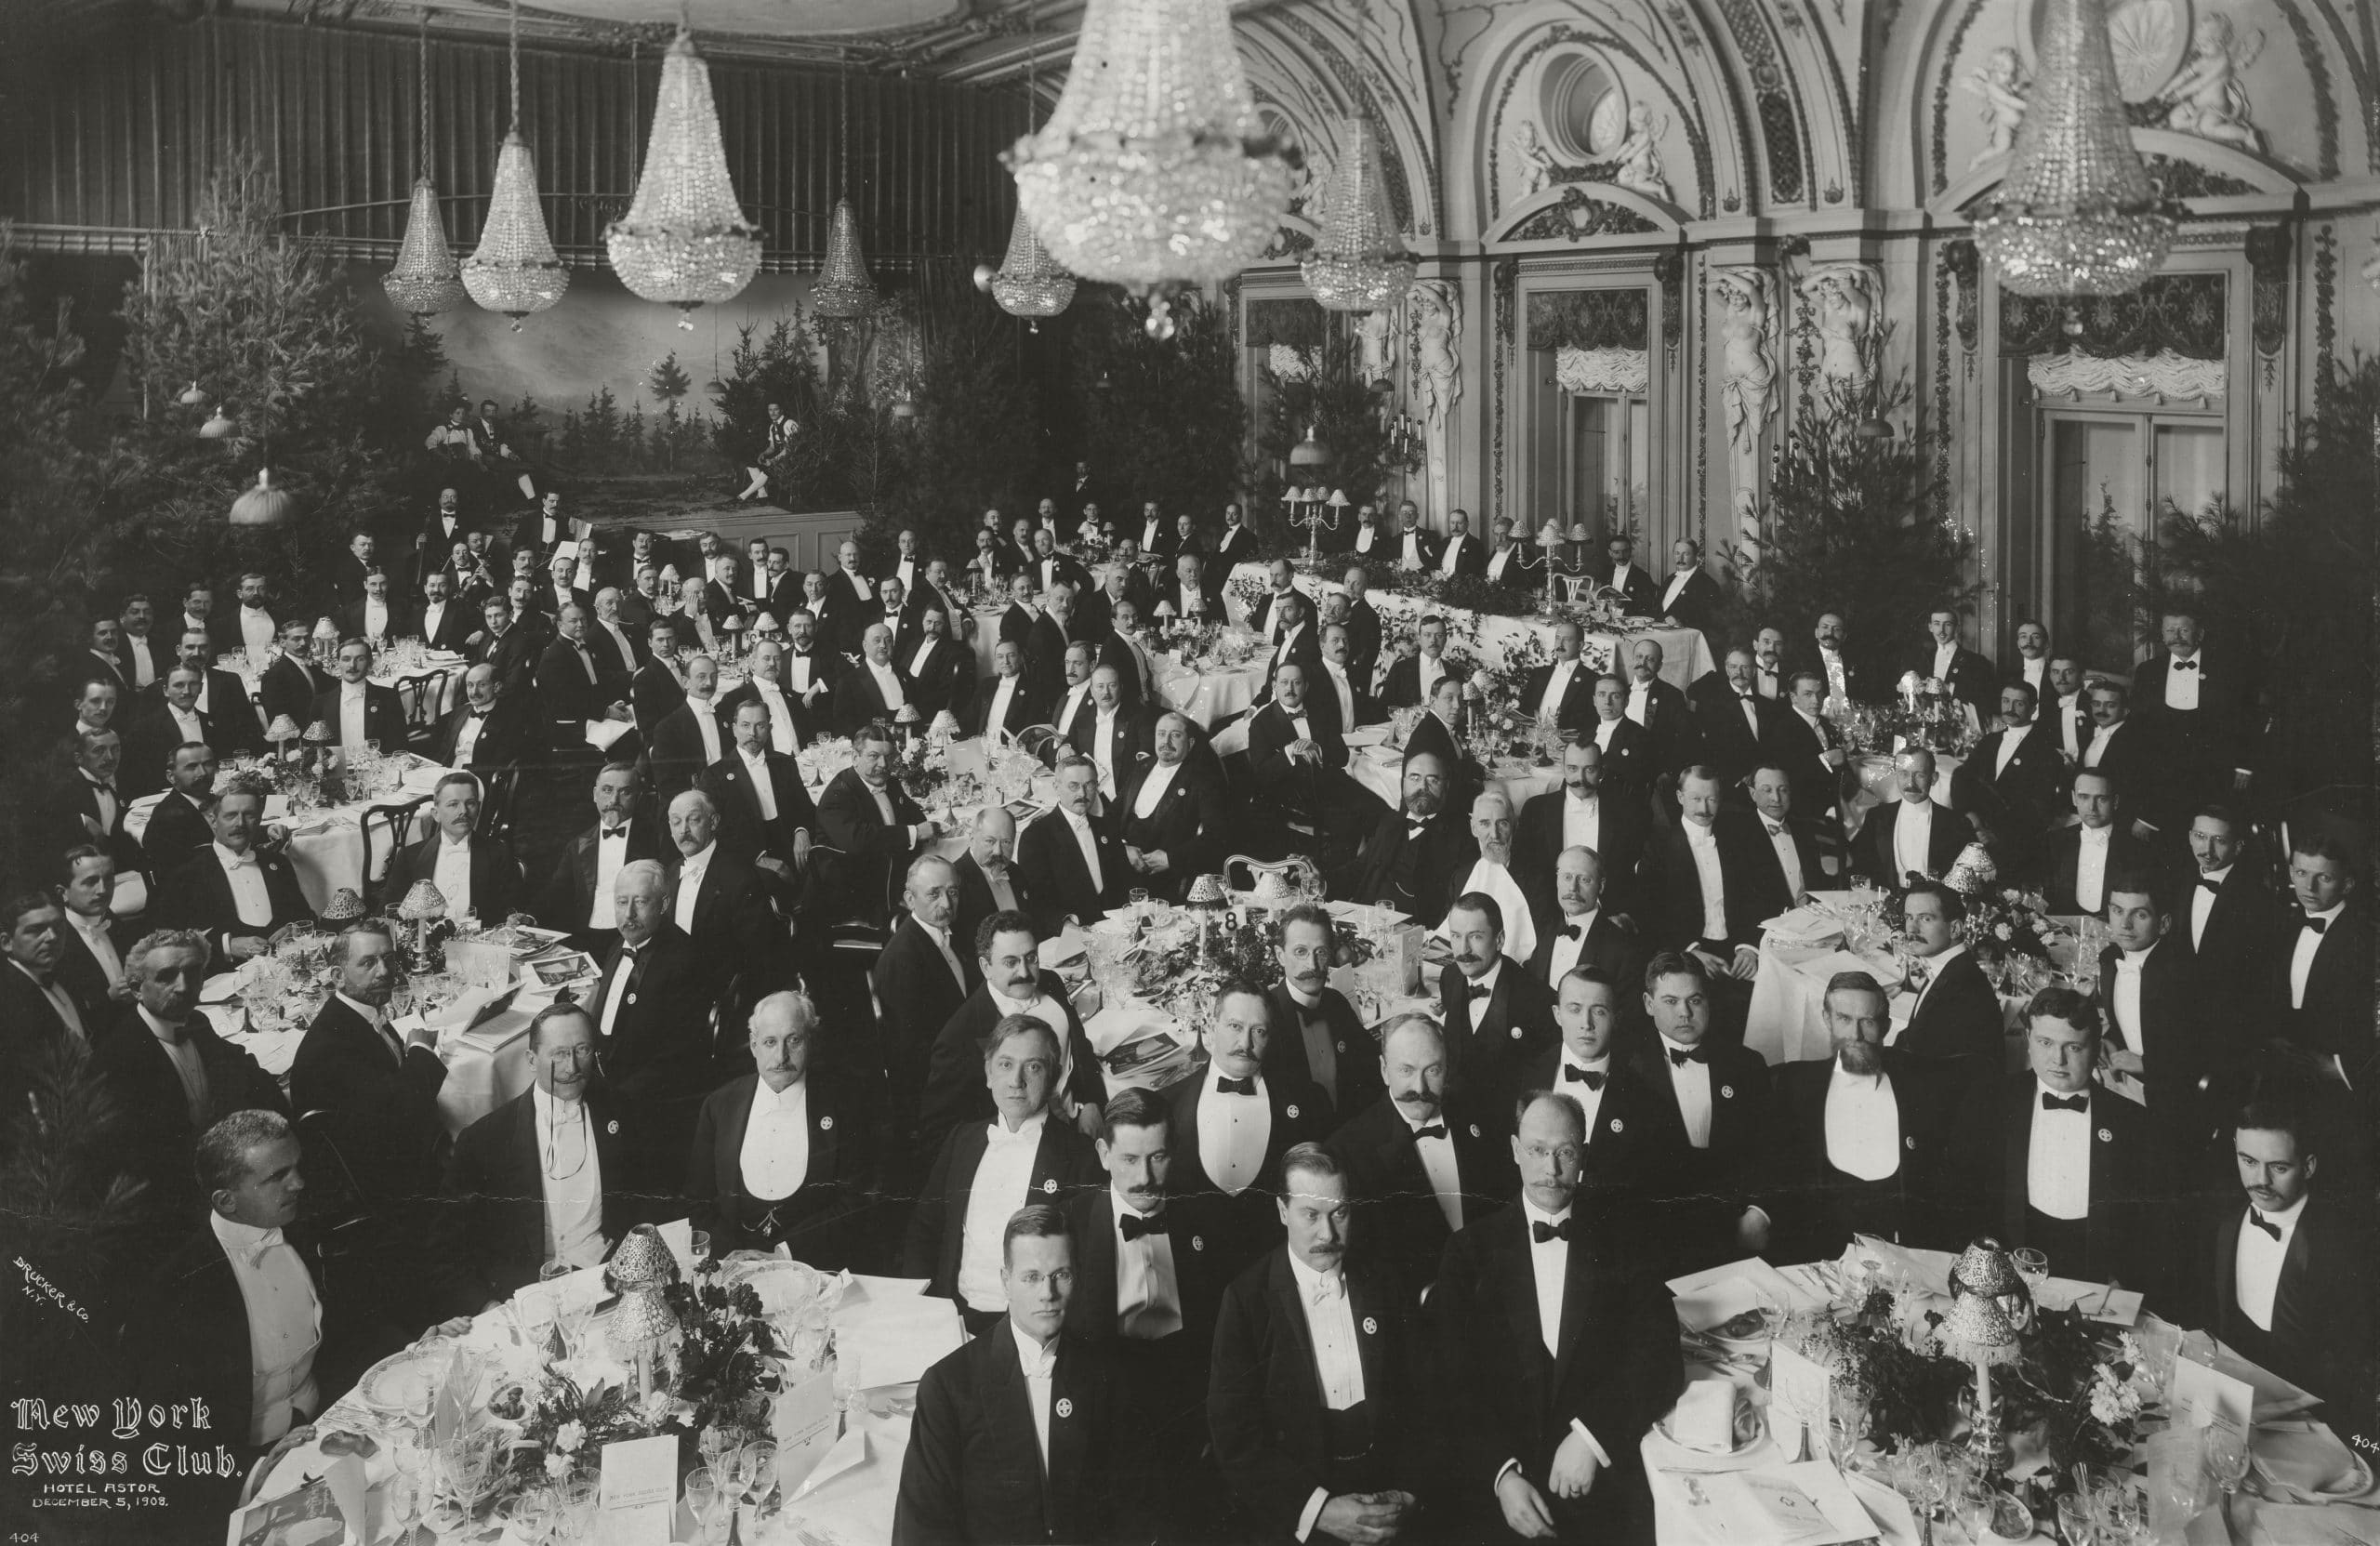 Групповое фото швейцарских мигрантов в нью-йоркском швейцарском клубе, отель Astor, 1905 г. (© Швейцарский национальный музей)